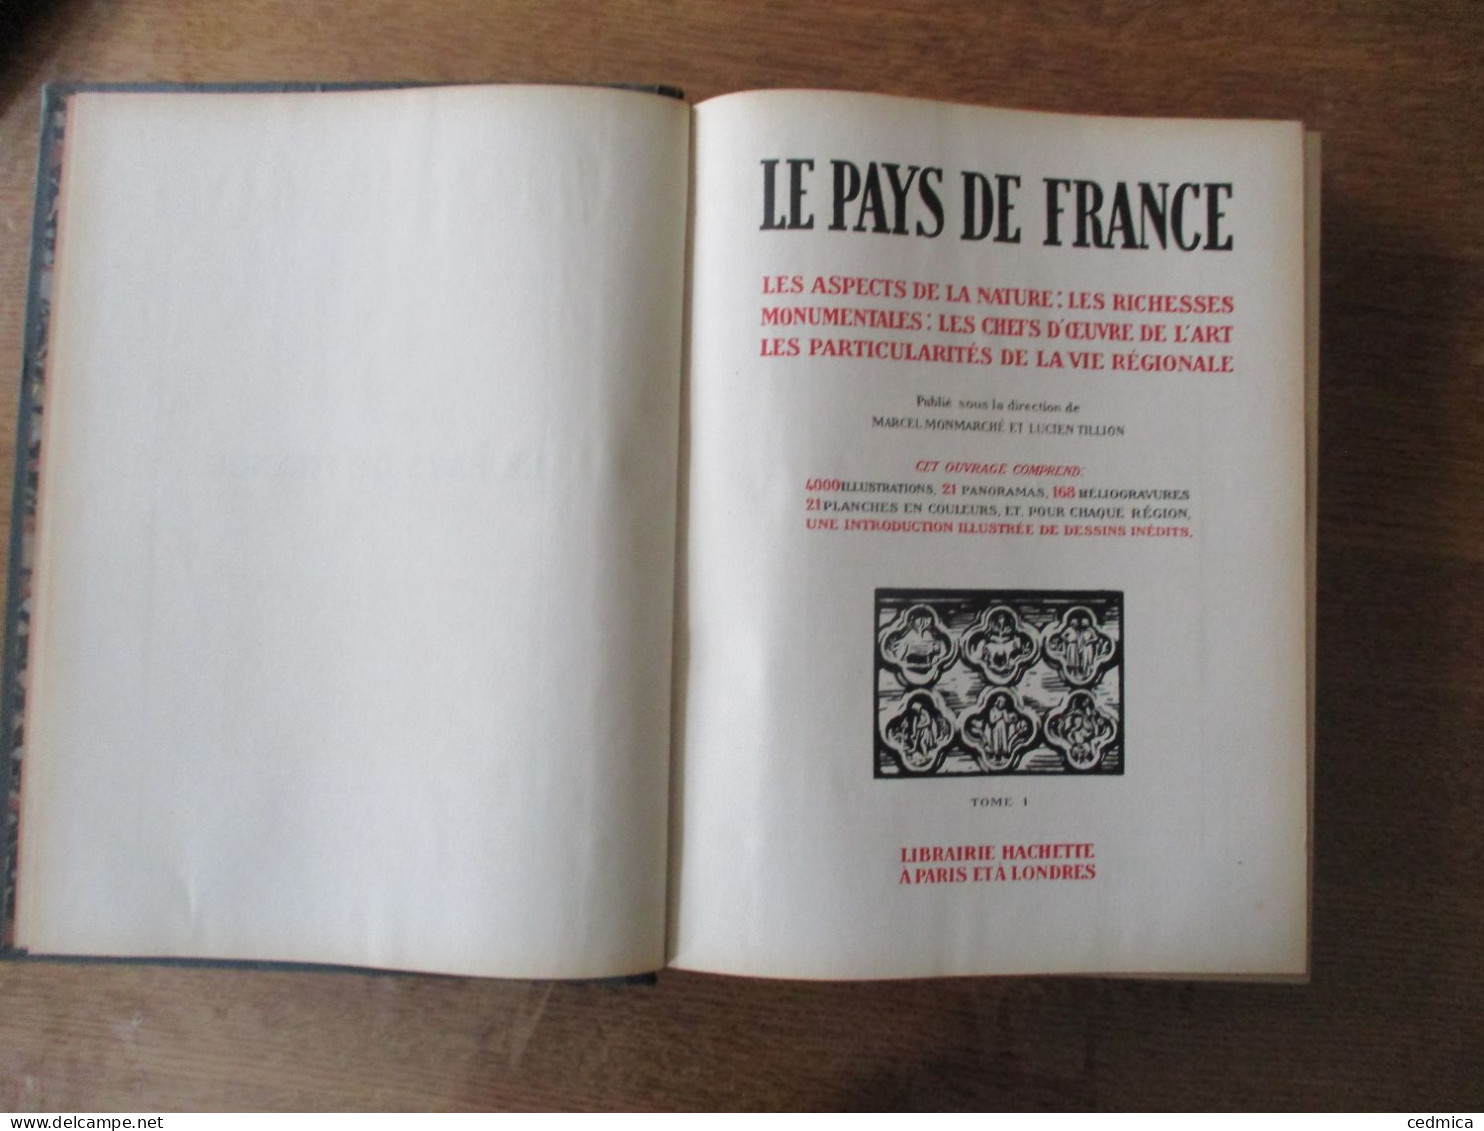 LE PAYS DE FRANCE TOMES 1,2 ET 3 LIBRAIRIE HACHETTE 1925 PUBLIE SOUS LA DIRECTION DE MARCEL MONMARCHE ET LUCIEN TILLION - Geographie